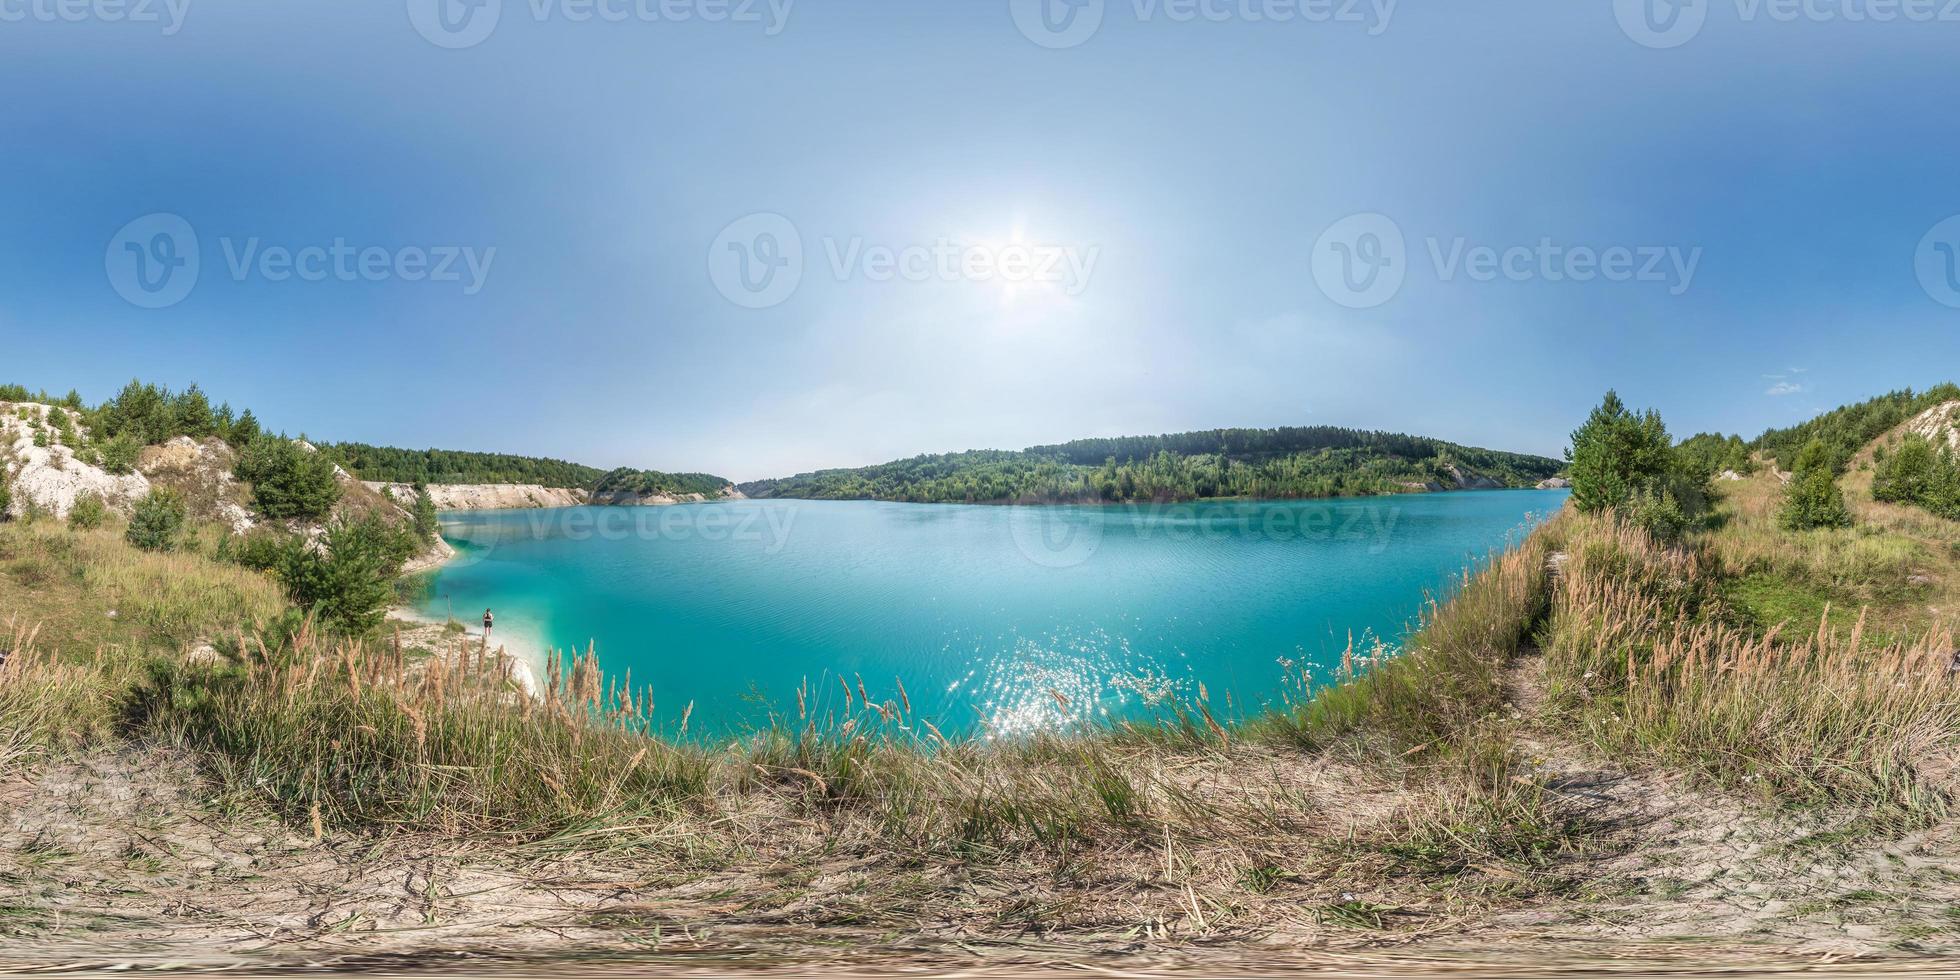 full sömlös sfärisk hdri-panorama 360 graders vinkelvy på chalkpit på kalkstenskusten av enorm turkos sjö på sommardagen i ekvirektangulär projektion med zenit och nadir, vr-innehåll foto